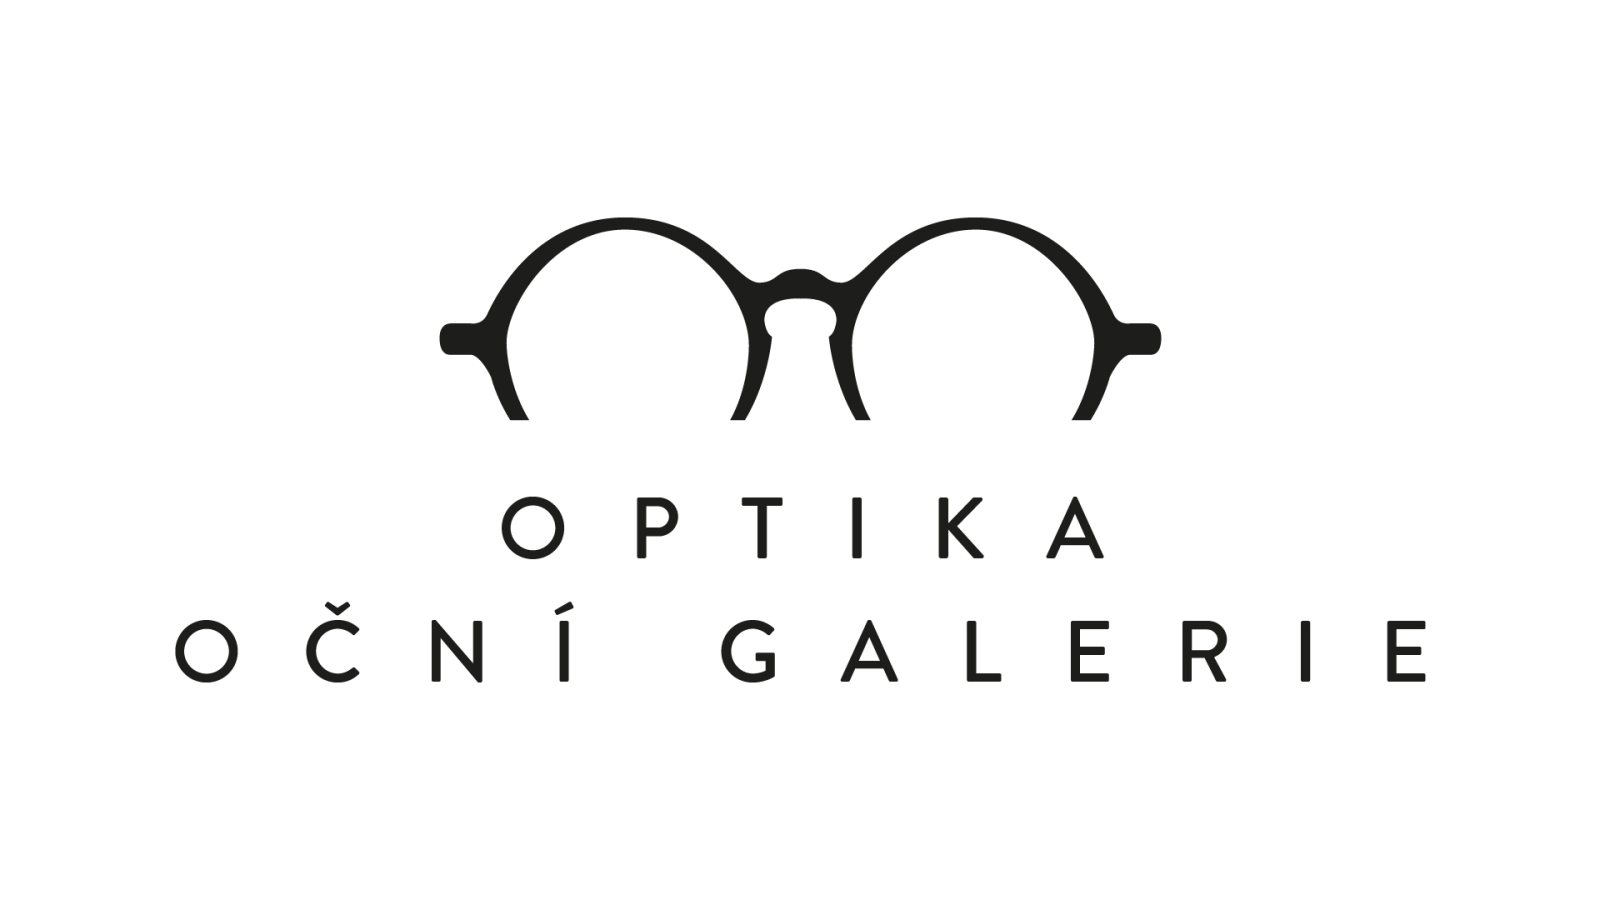 Optika Oční galerie